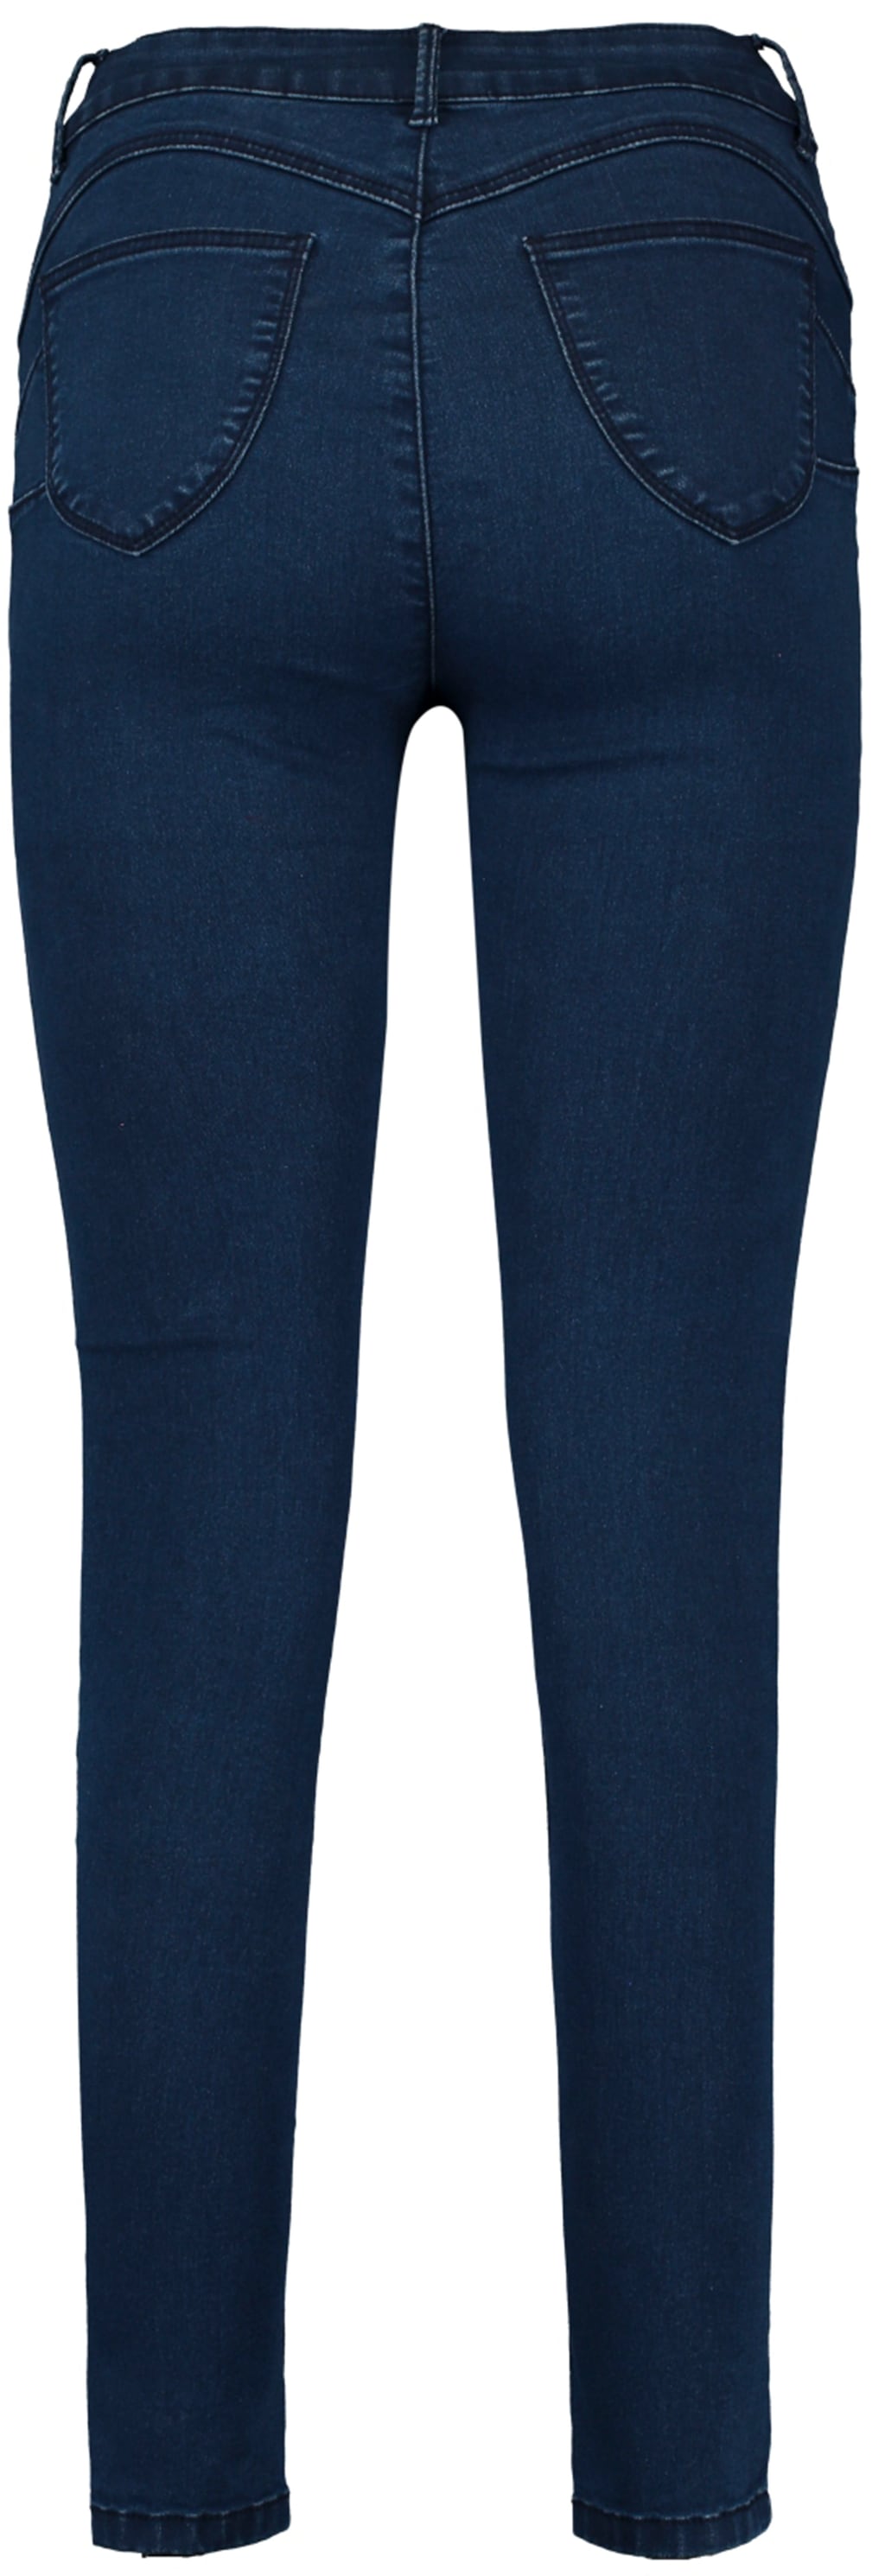 HaILY’S Push-up-Jeans PUSH in 7/8- Länge günstig online kaufen